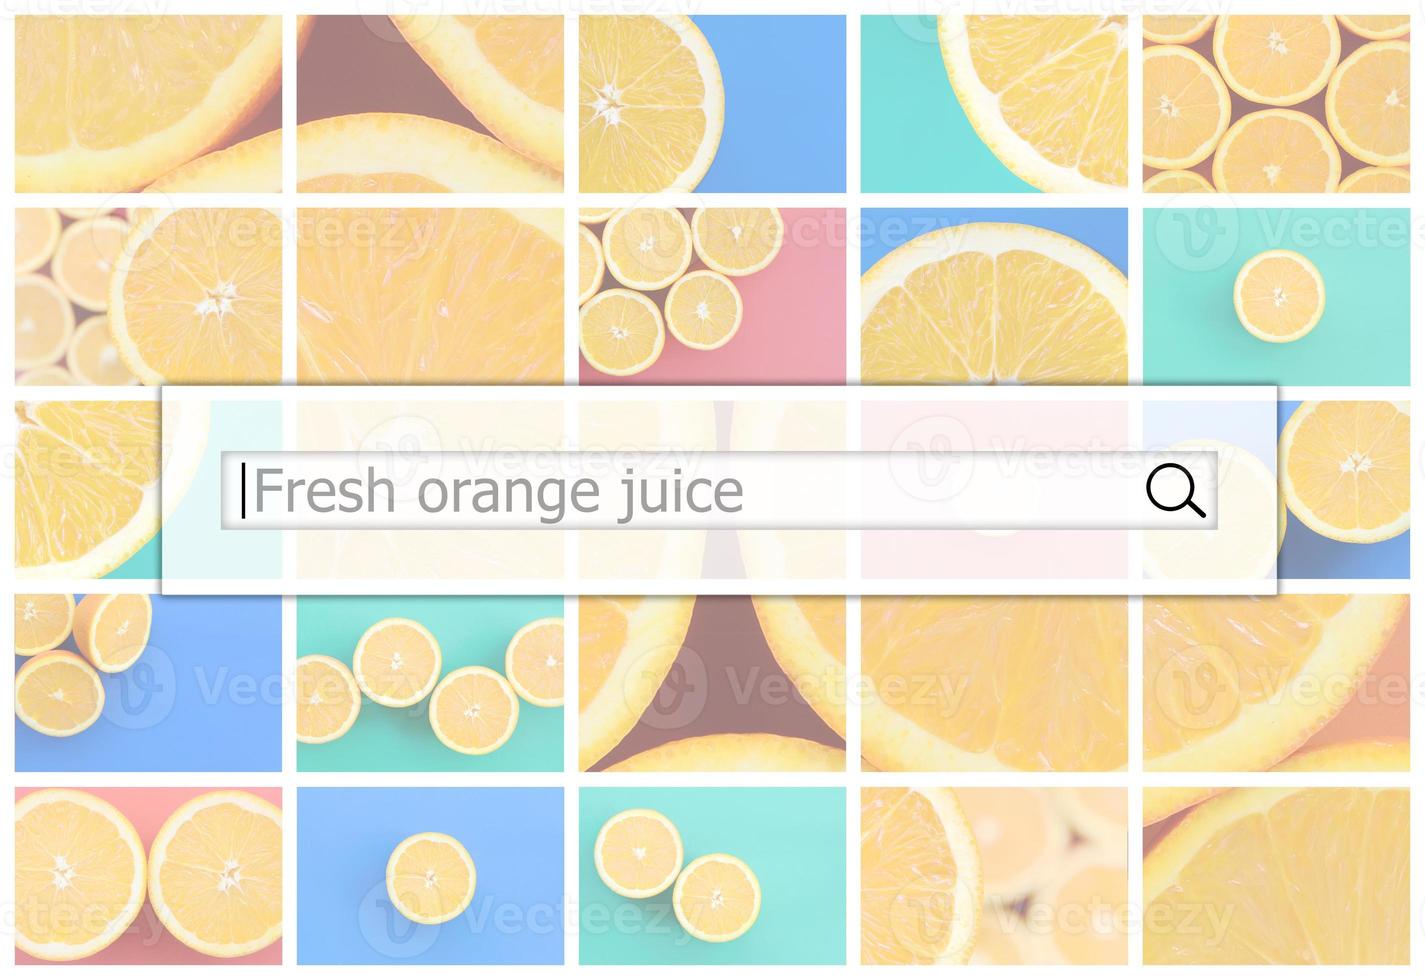 visualización de la barra de búsqueda en el fondo de un collage de muchas imágenes con jugosas naranjas. jugo de naranja fresco foto